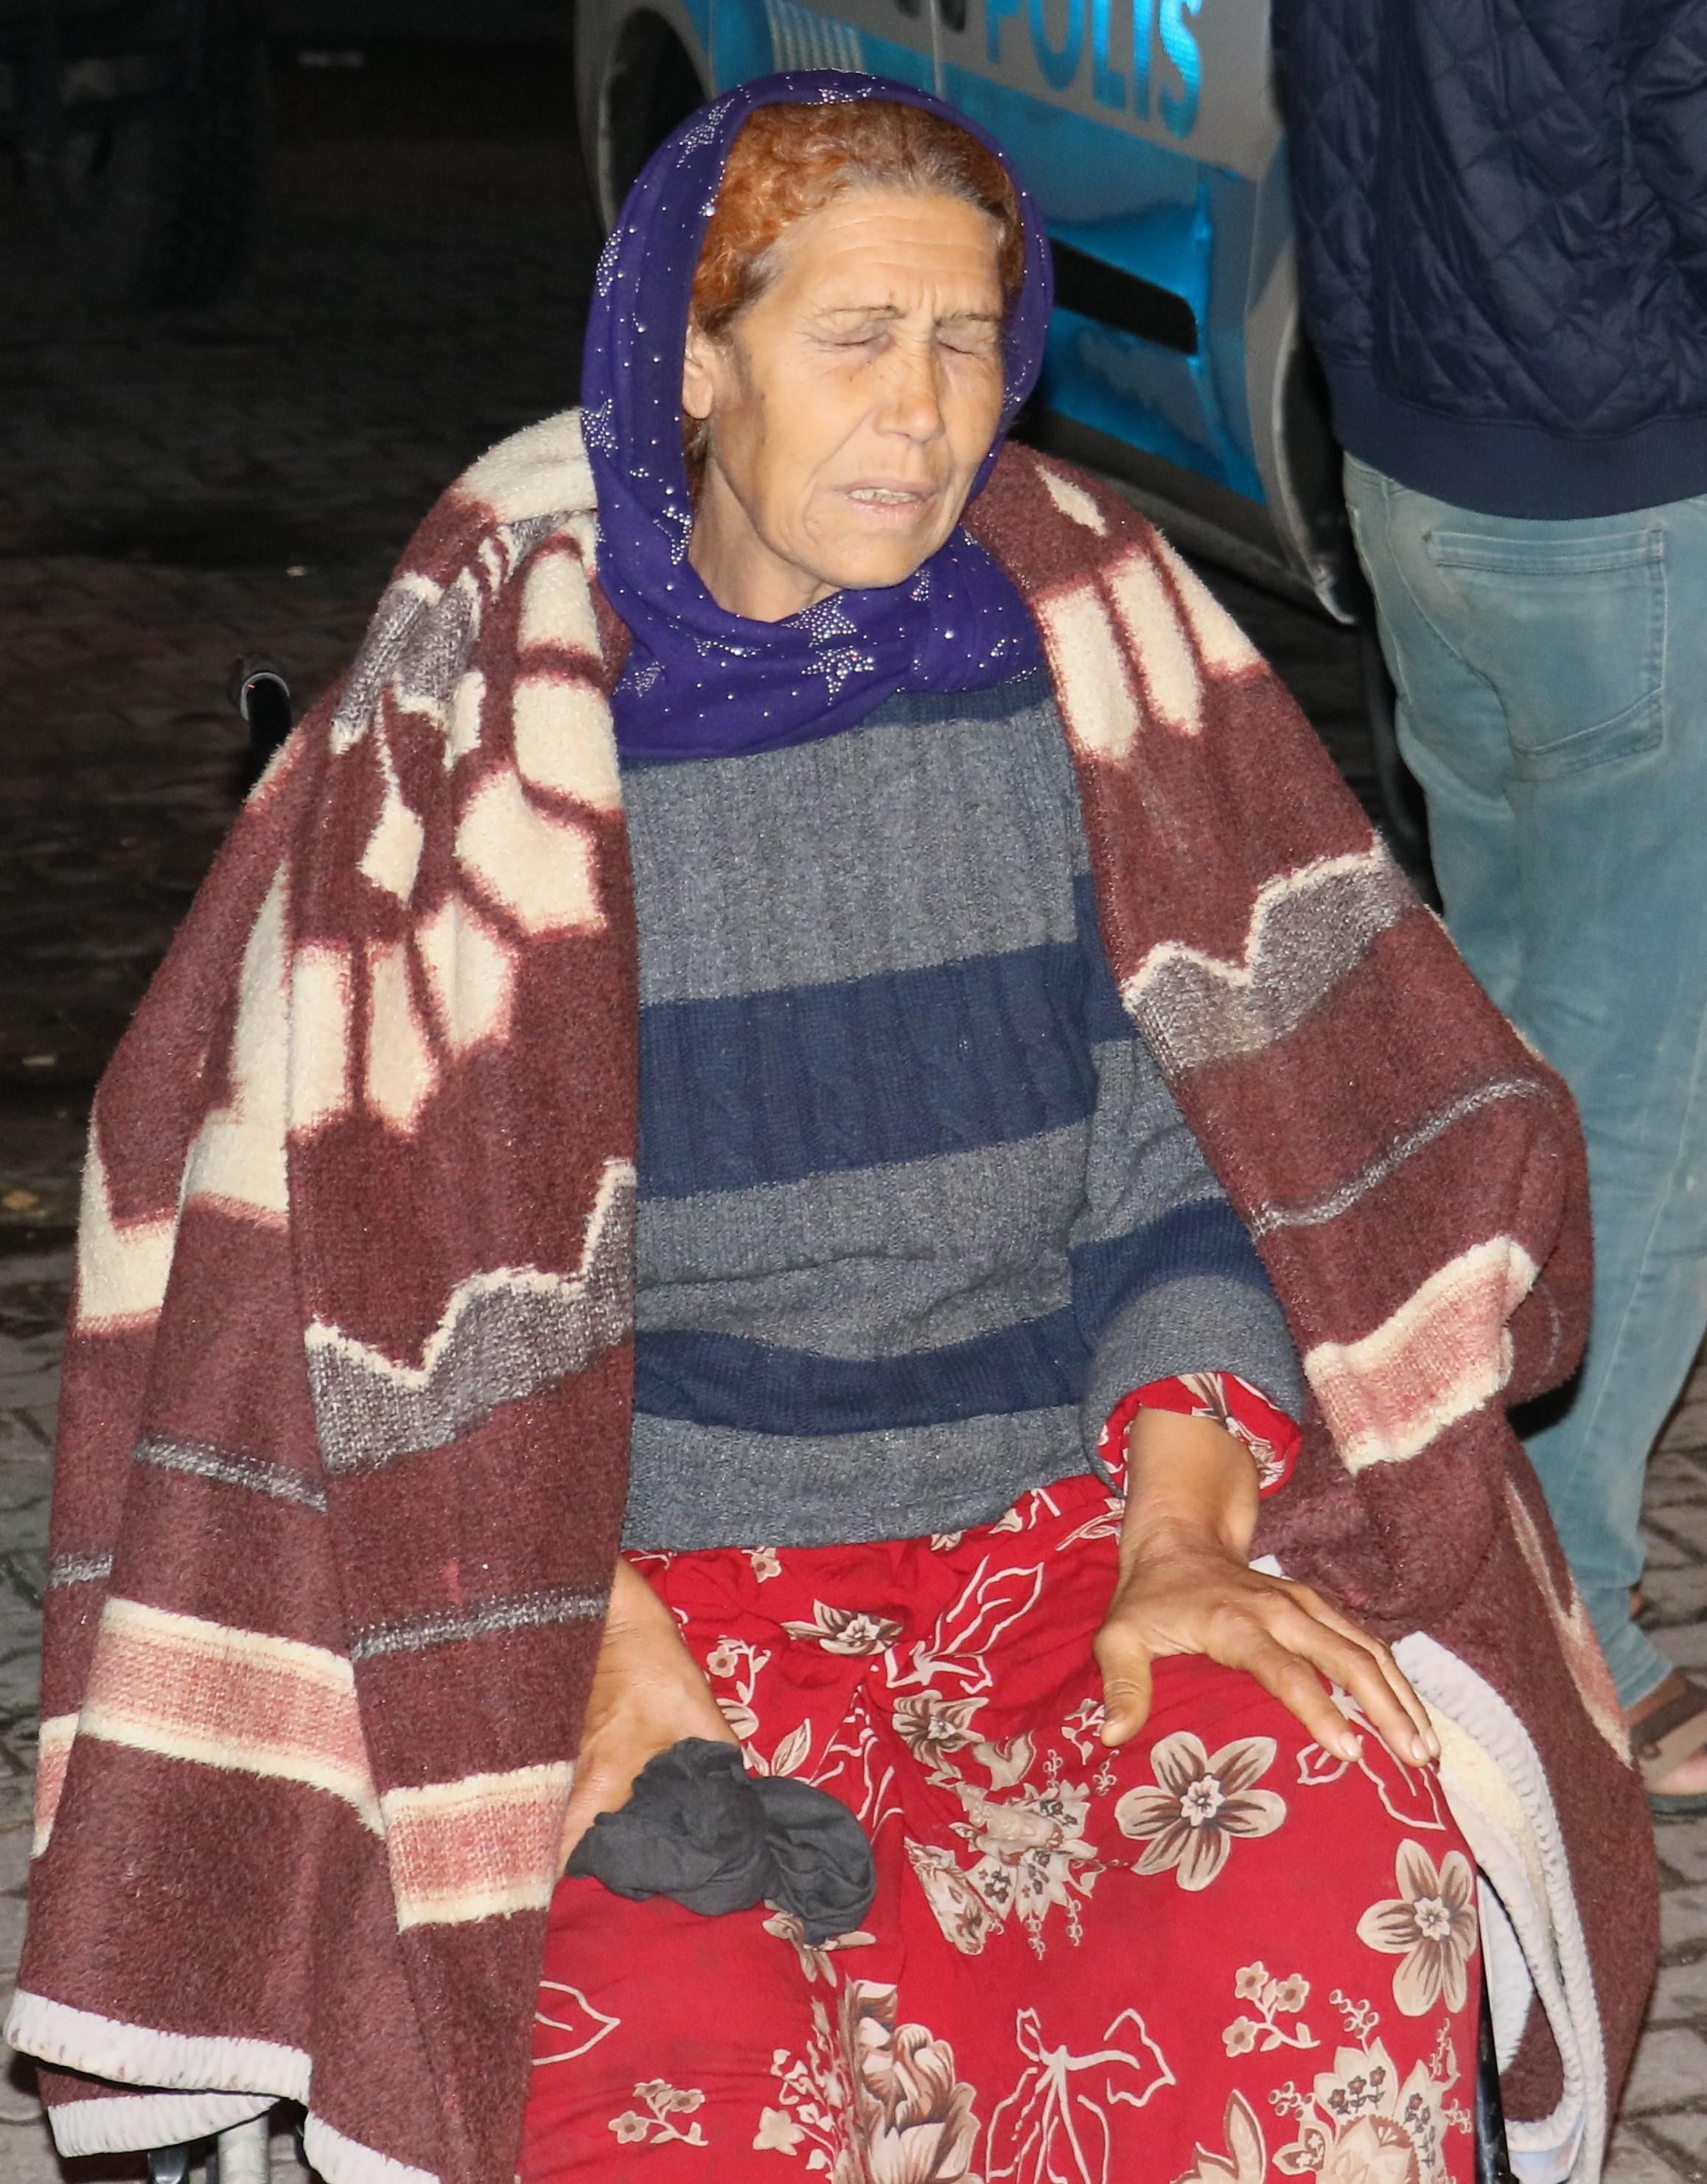 Adanada askerden izne gelen genci annesinin önünde öldürdüler